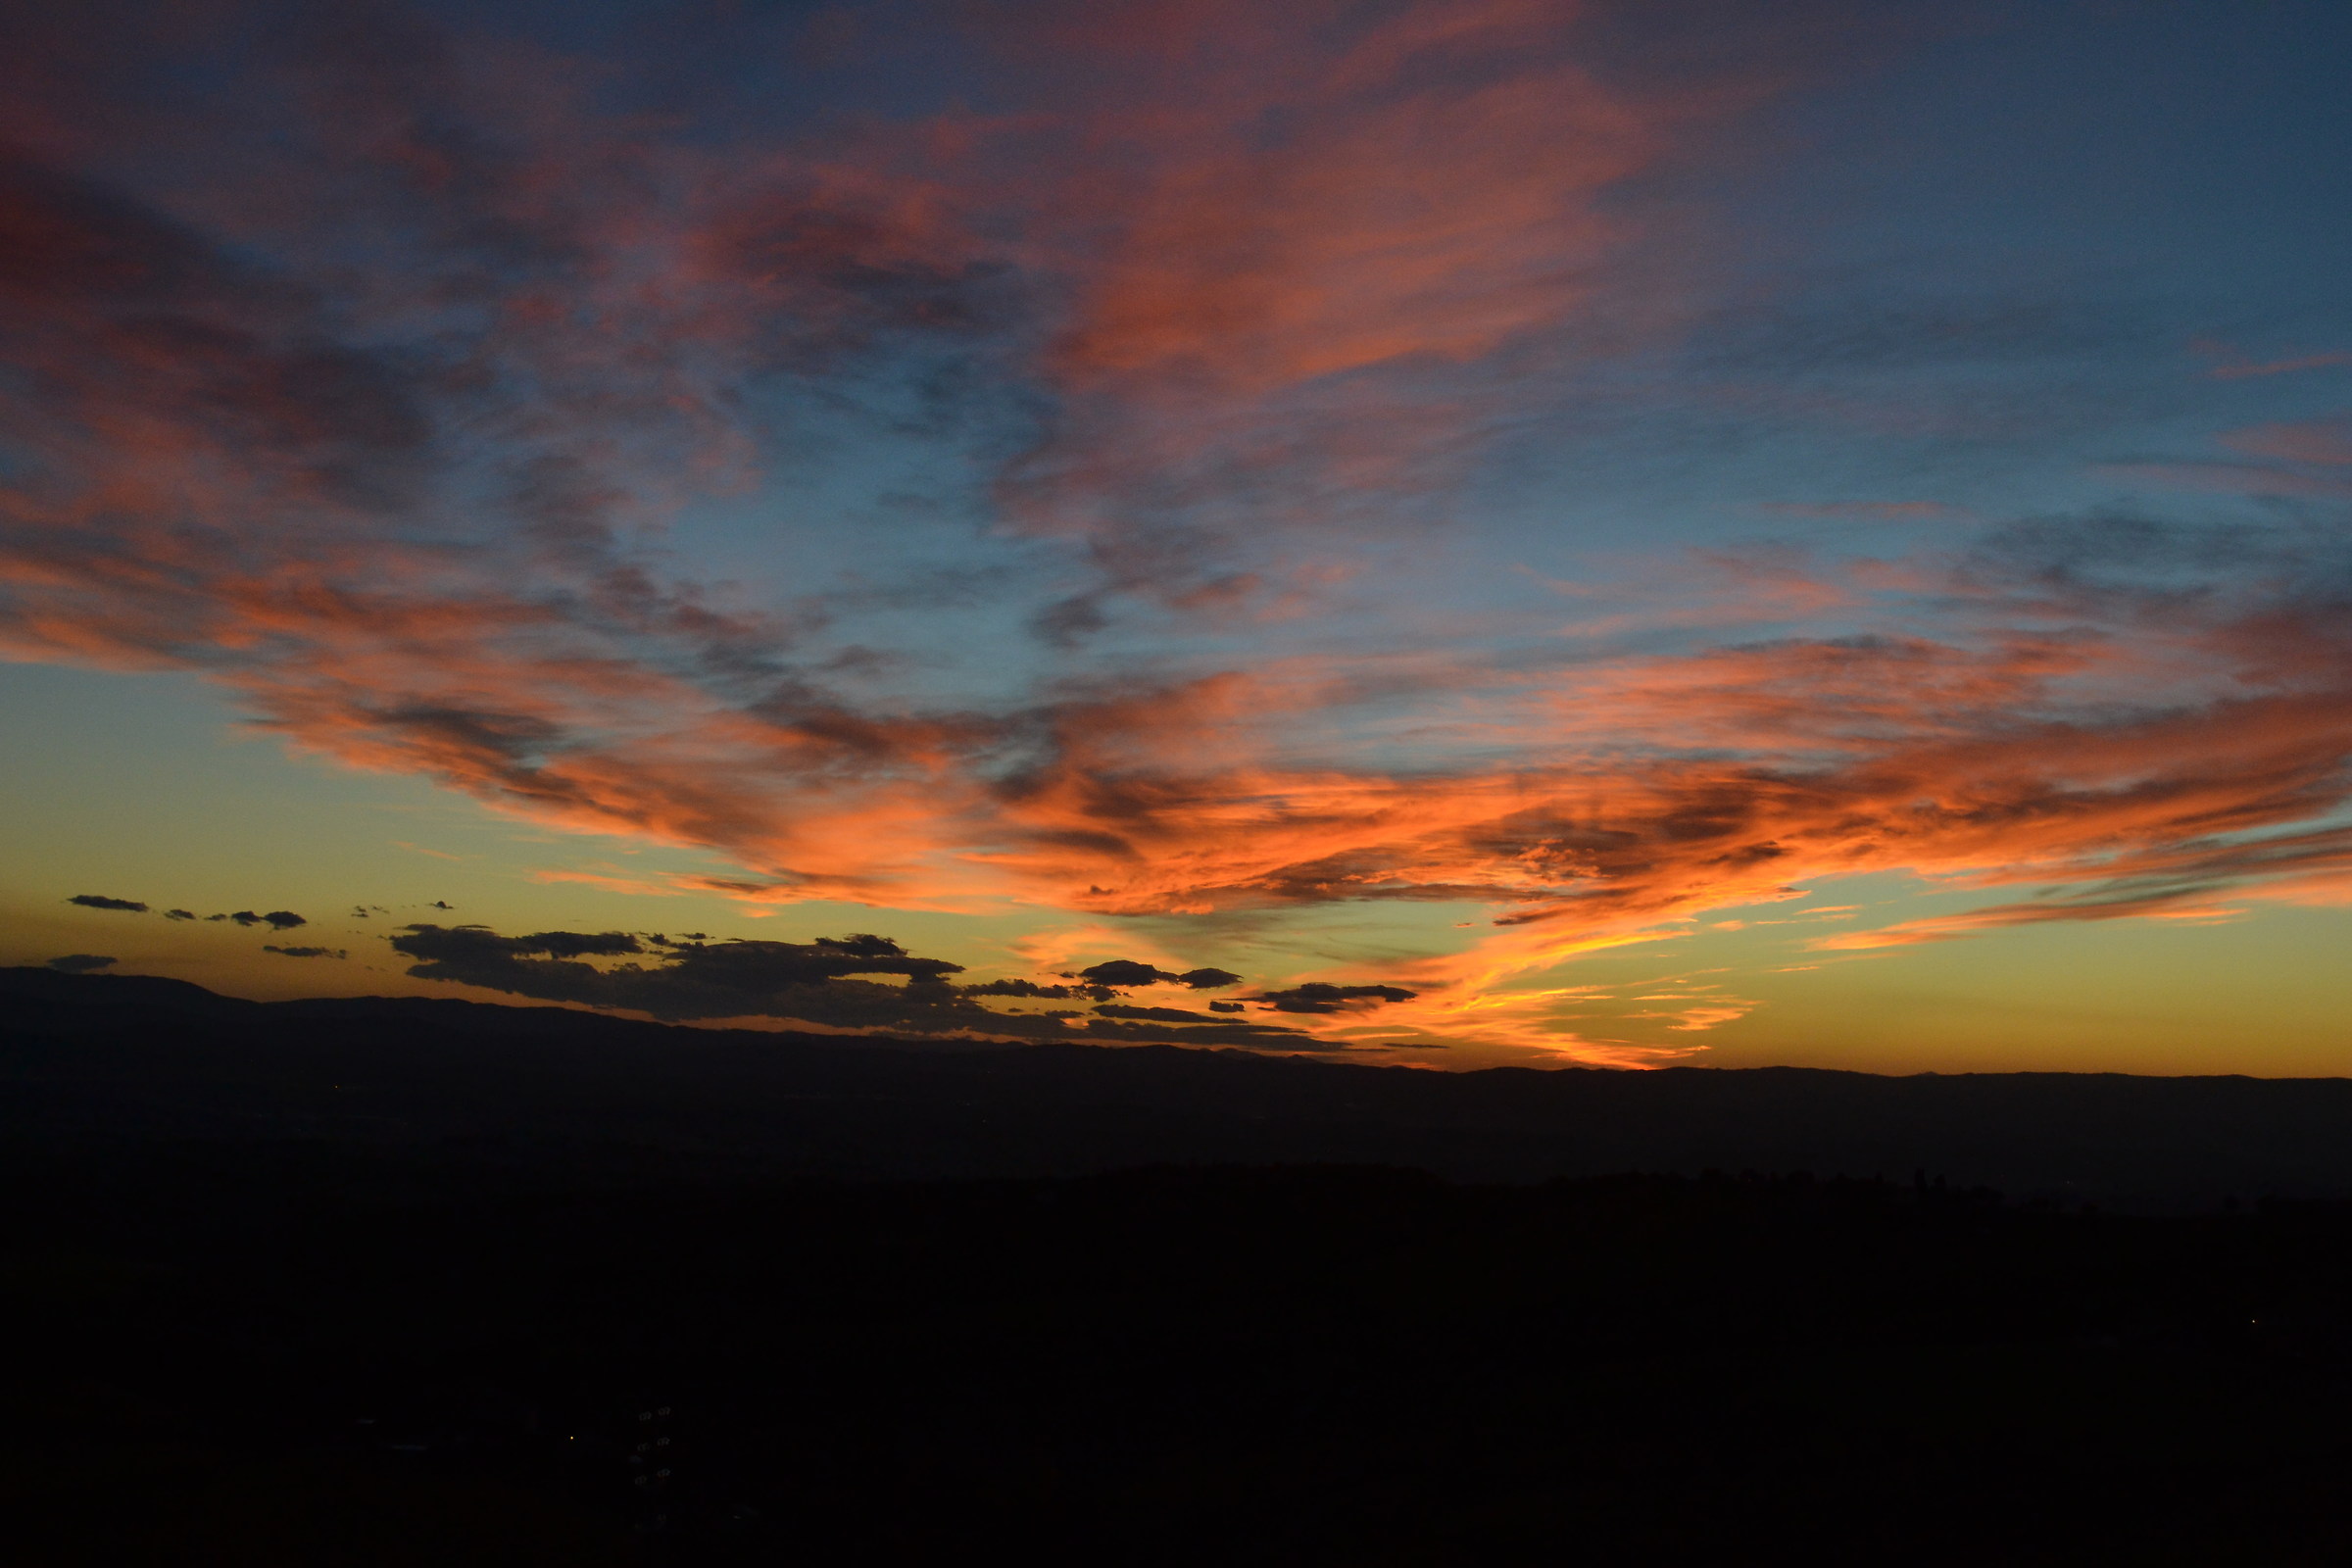 Sunset over Chianti - November 2013...